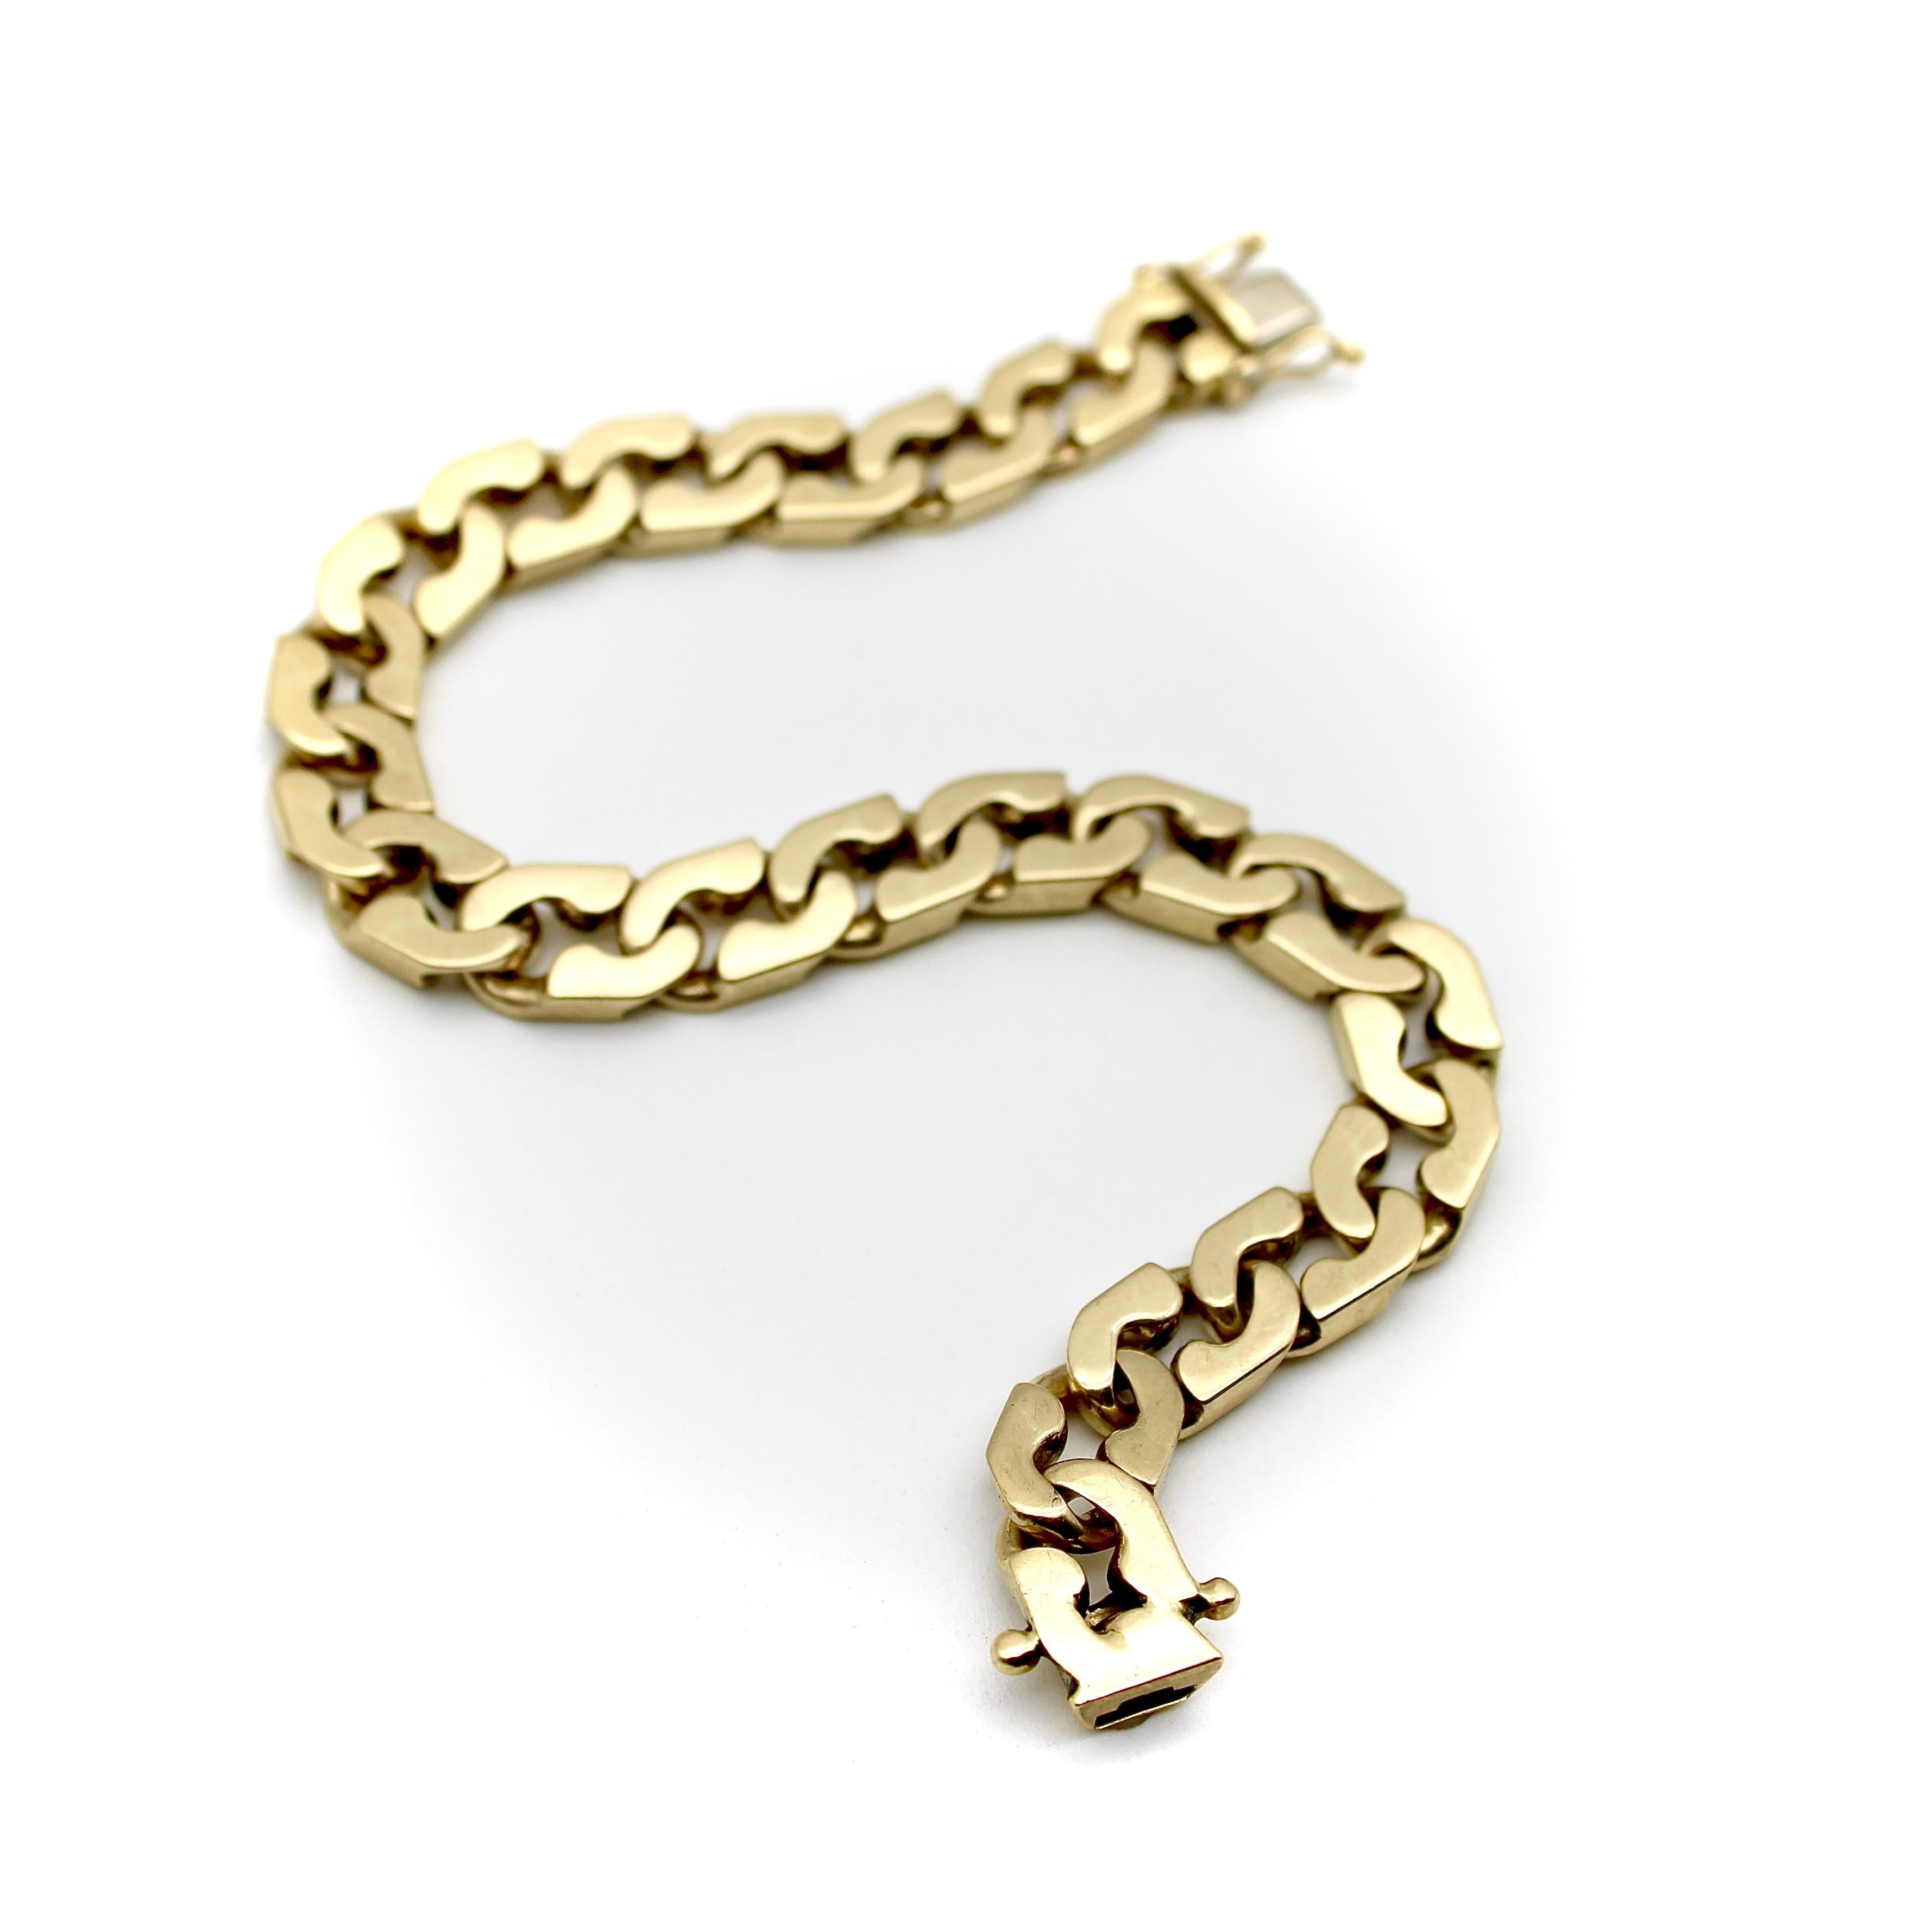 Ce bracelet à maillons en or 14k provient d'Italie, vers les années 1980. Son design aplati donne un bord dur aux maillons allongés de la boucle, leur permettant de s'emboîter comme le yin et le yang. Les maillons sont crantés de sorte qu'ils